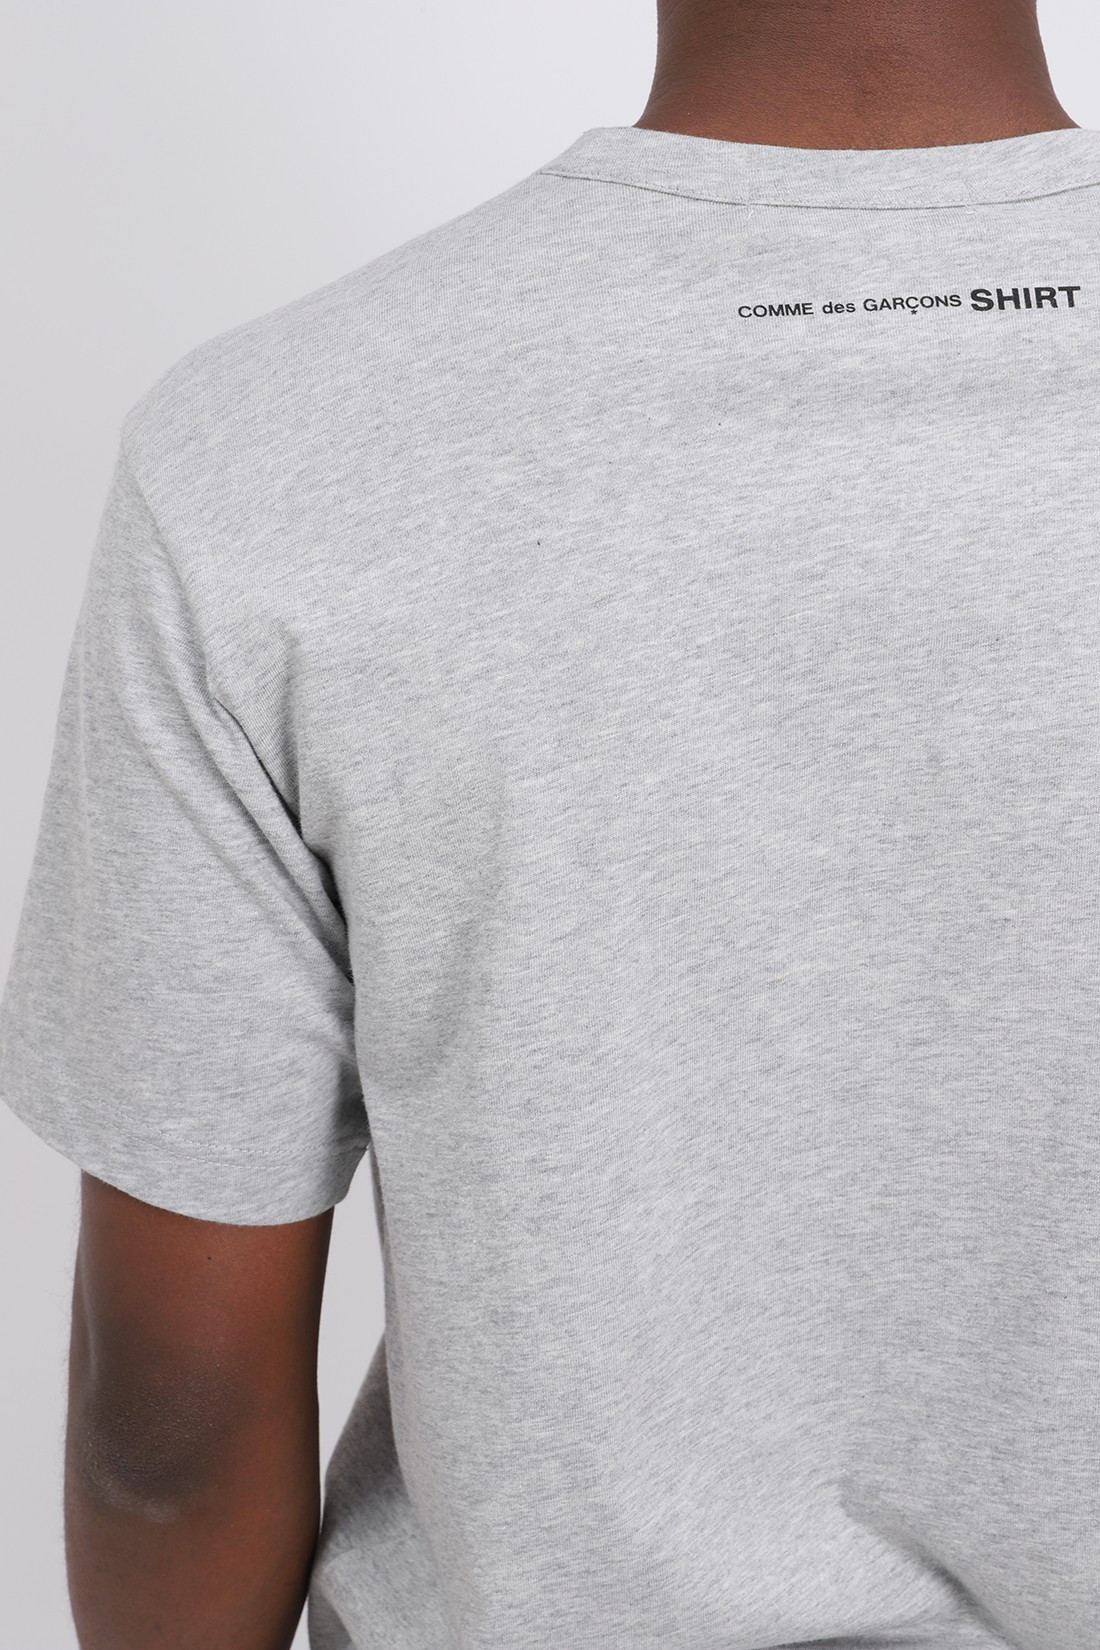 COMME DES GARÇONS SHIRT / Cdg shirt logo t-shirt Grey